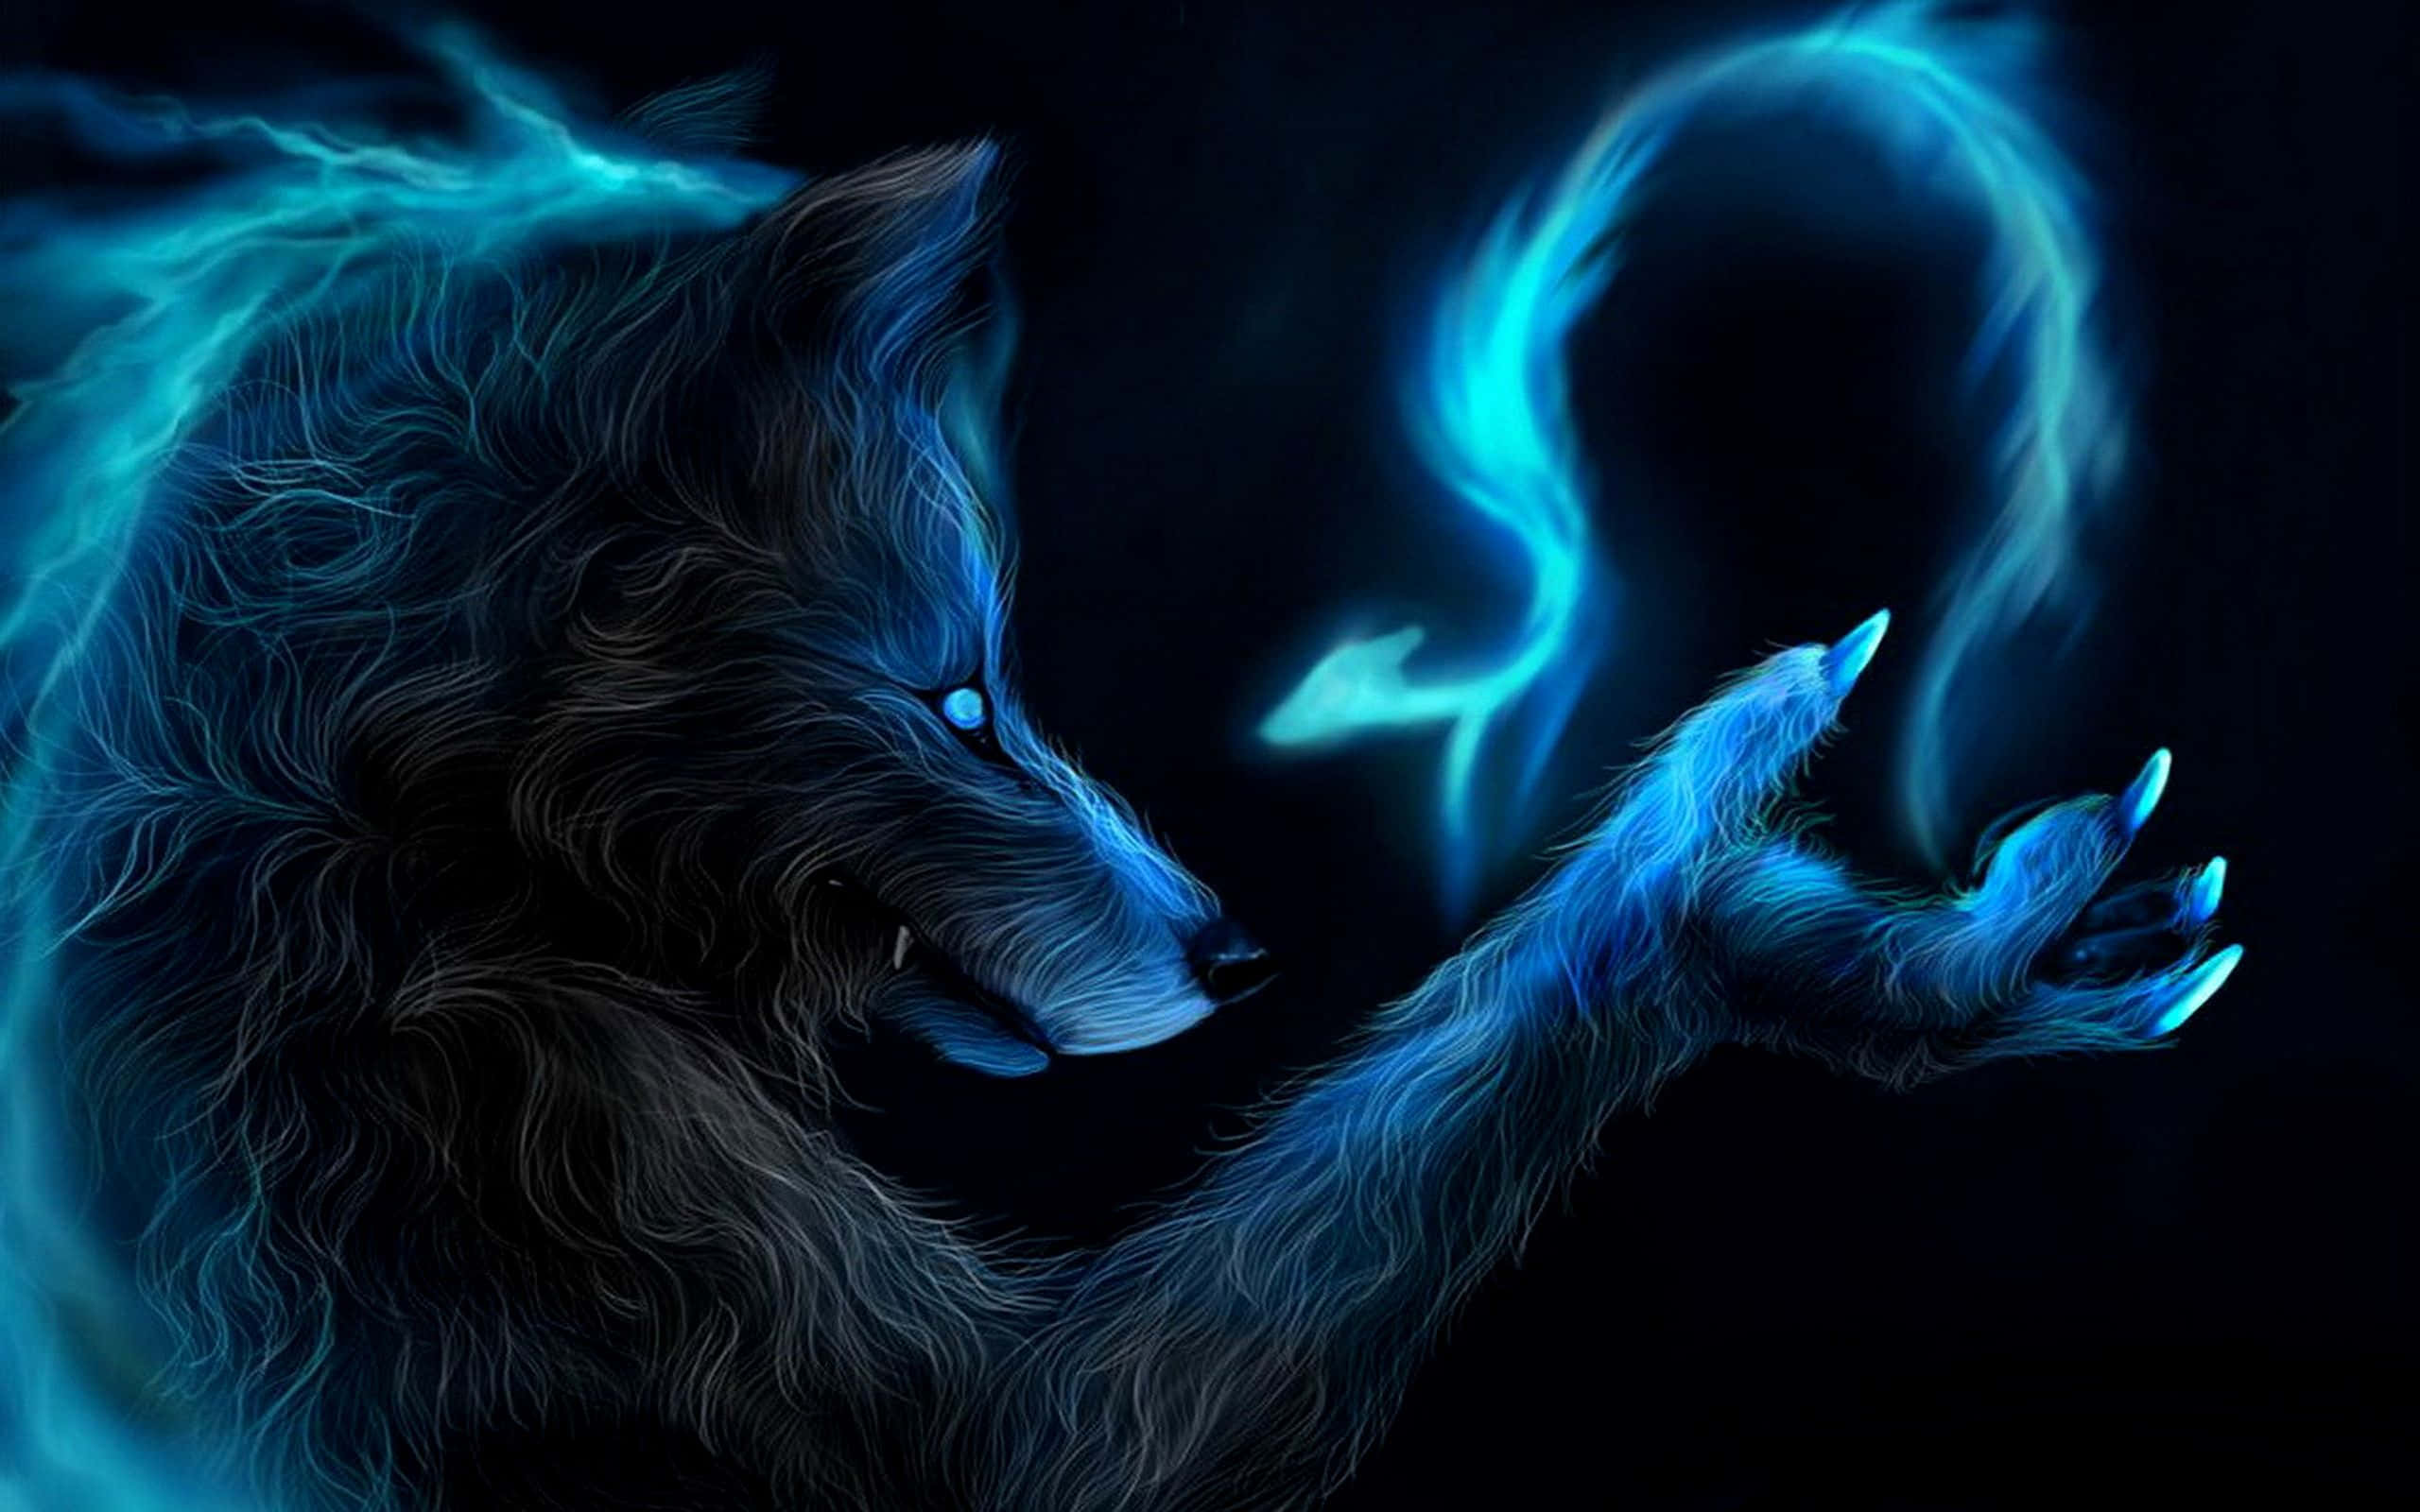 Einwerwolf Steht Im Licht Des Vollmonds